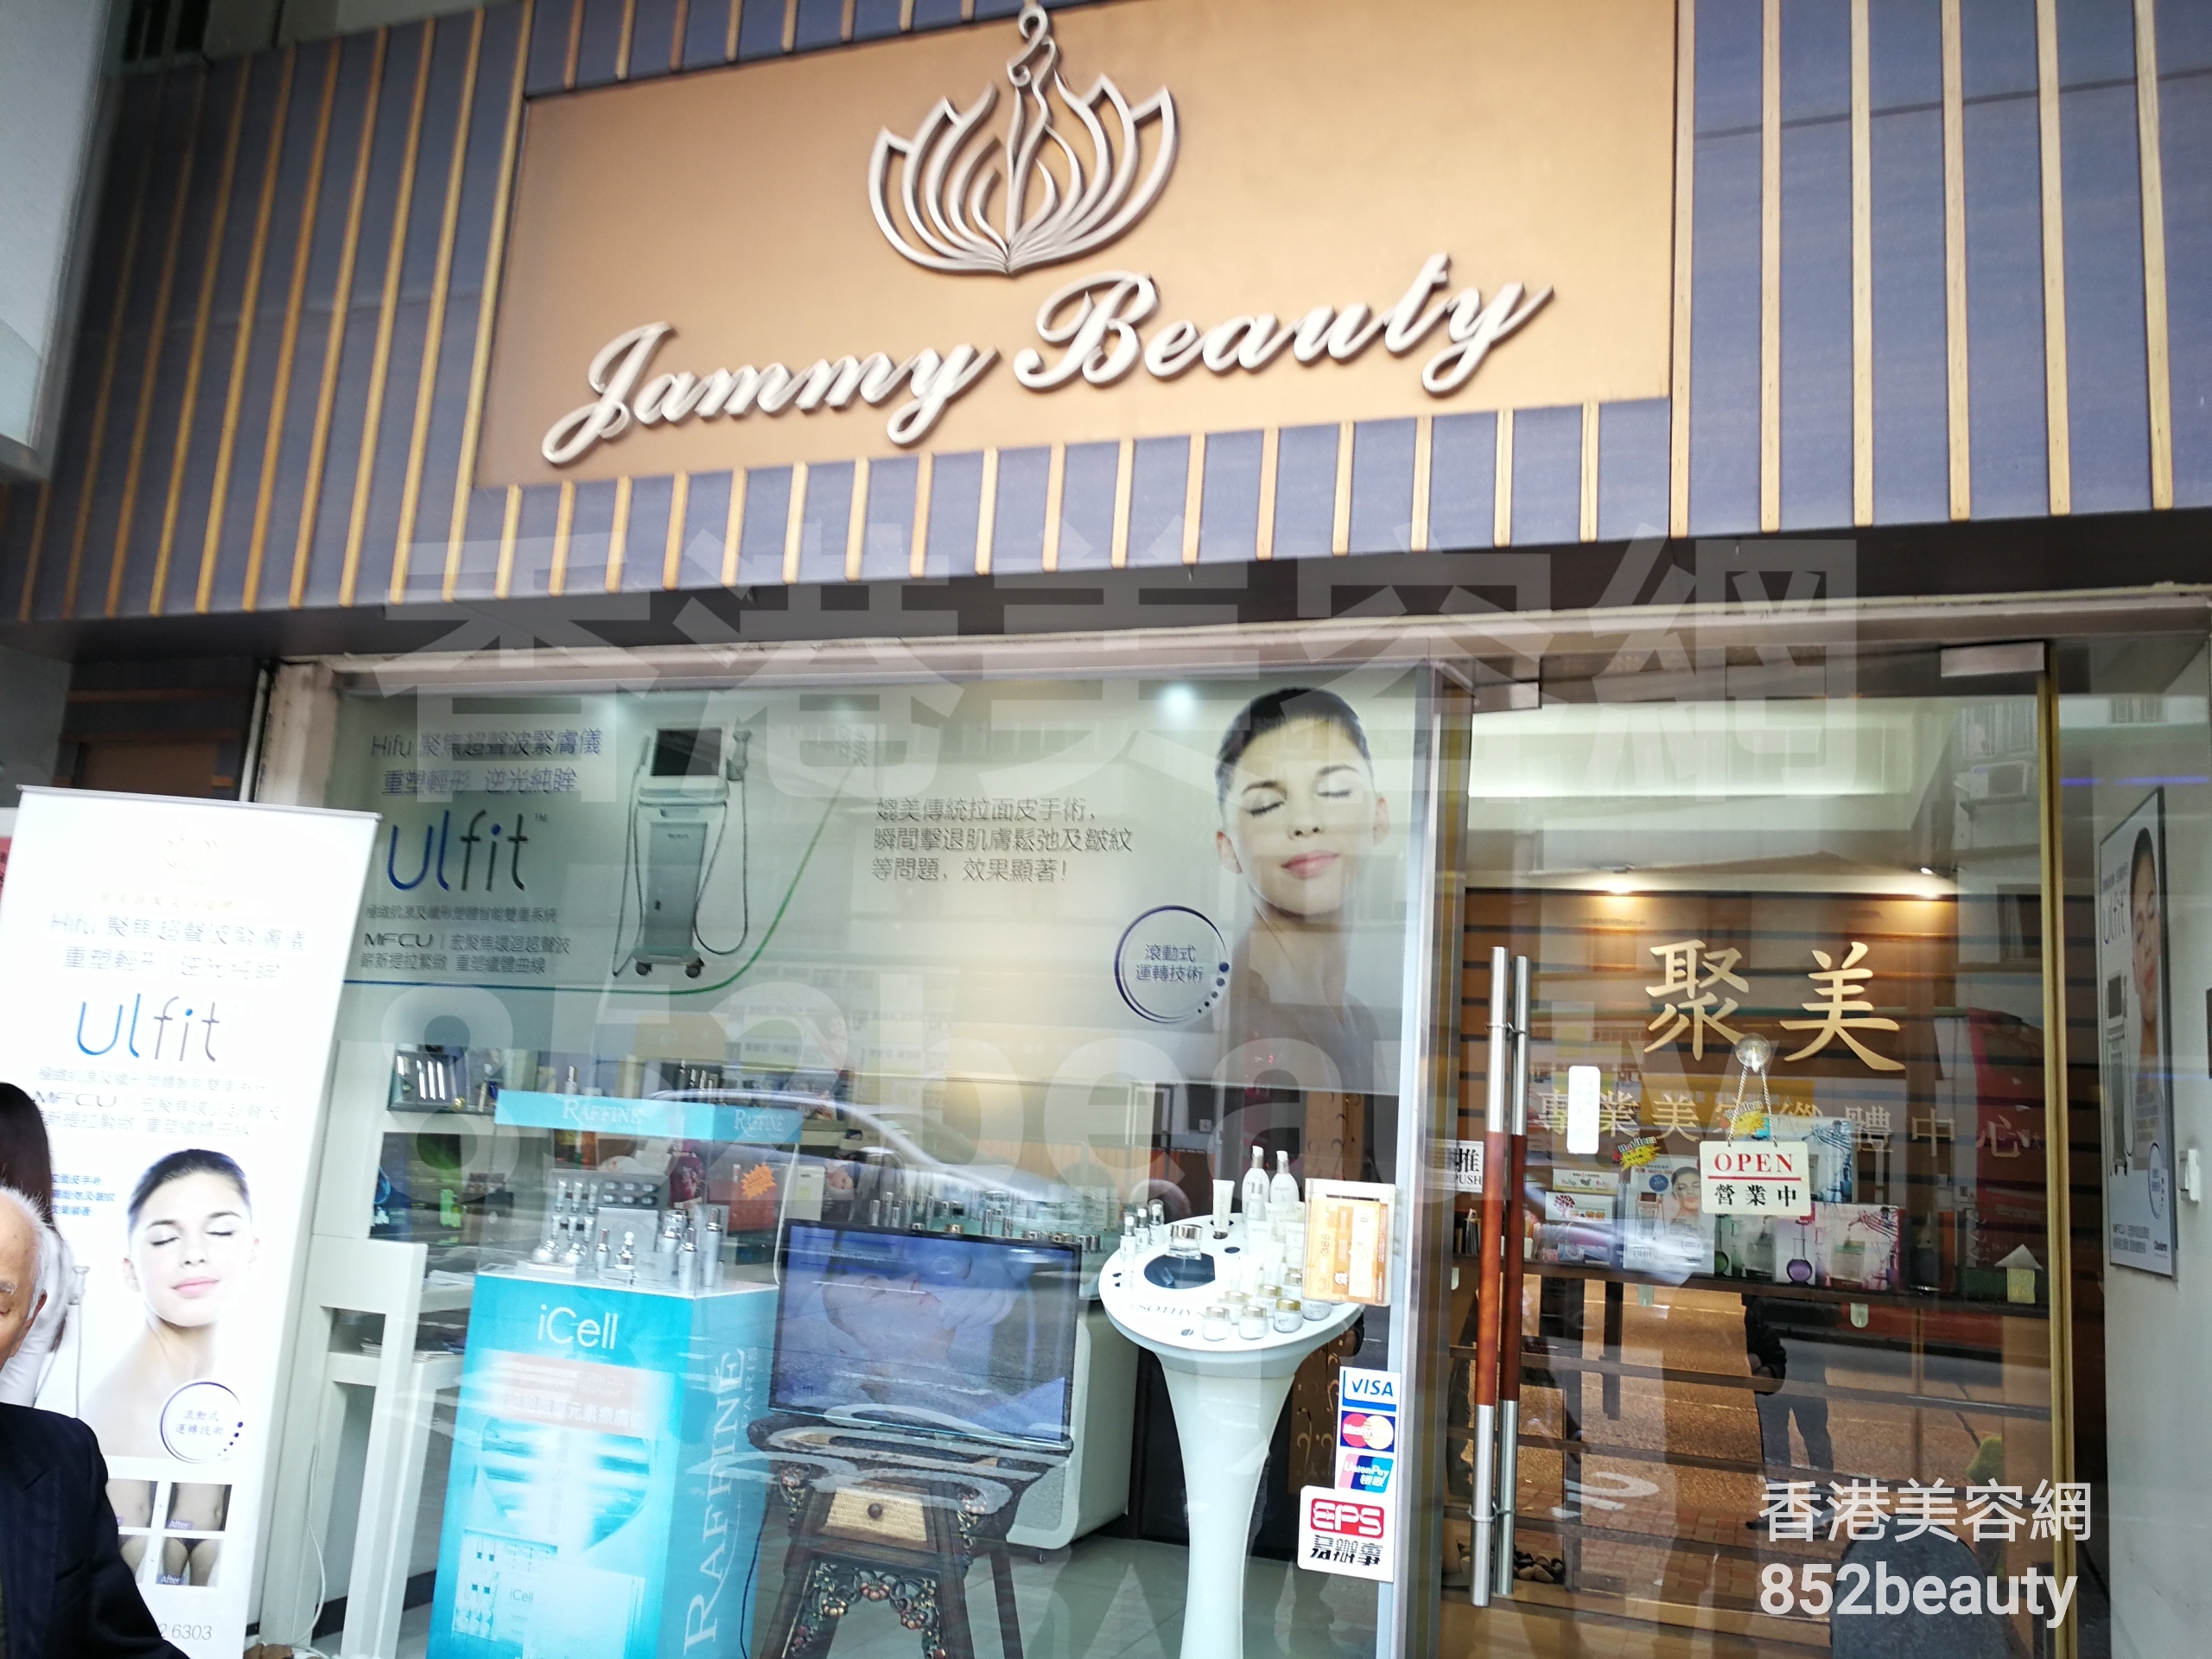 美容院 Beauty Salon: Jammy beauty house 聚美專業美容纖體中心